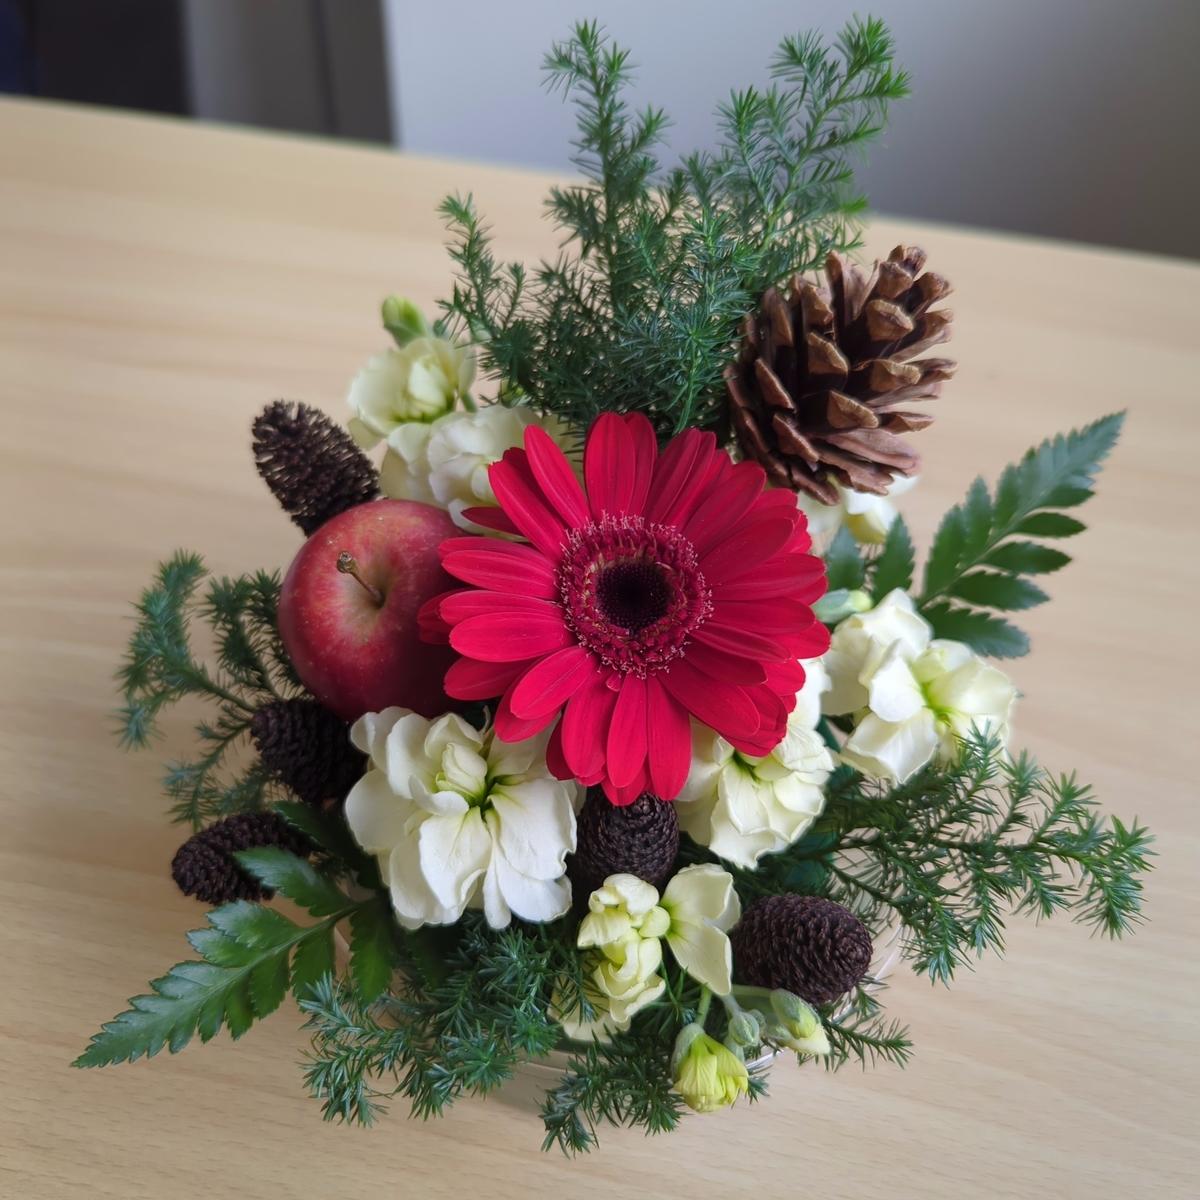 クリスマスらしいお花のカラーとバランスが素敵な生徒の作品